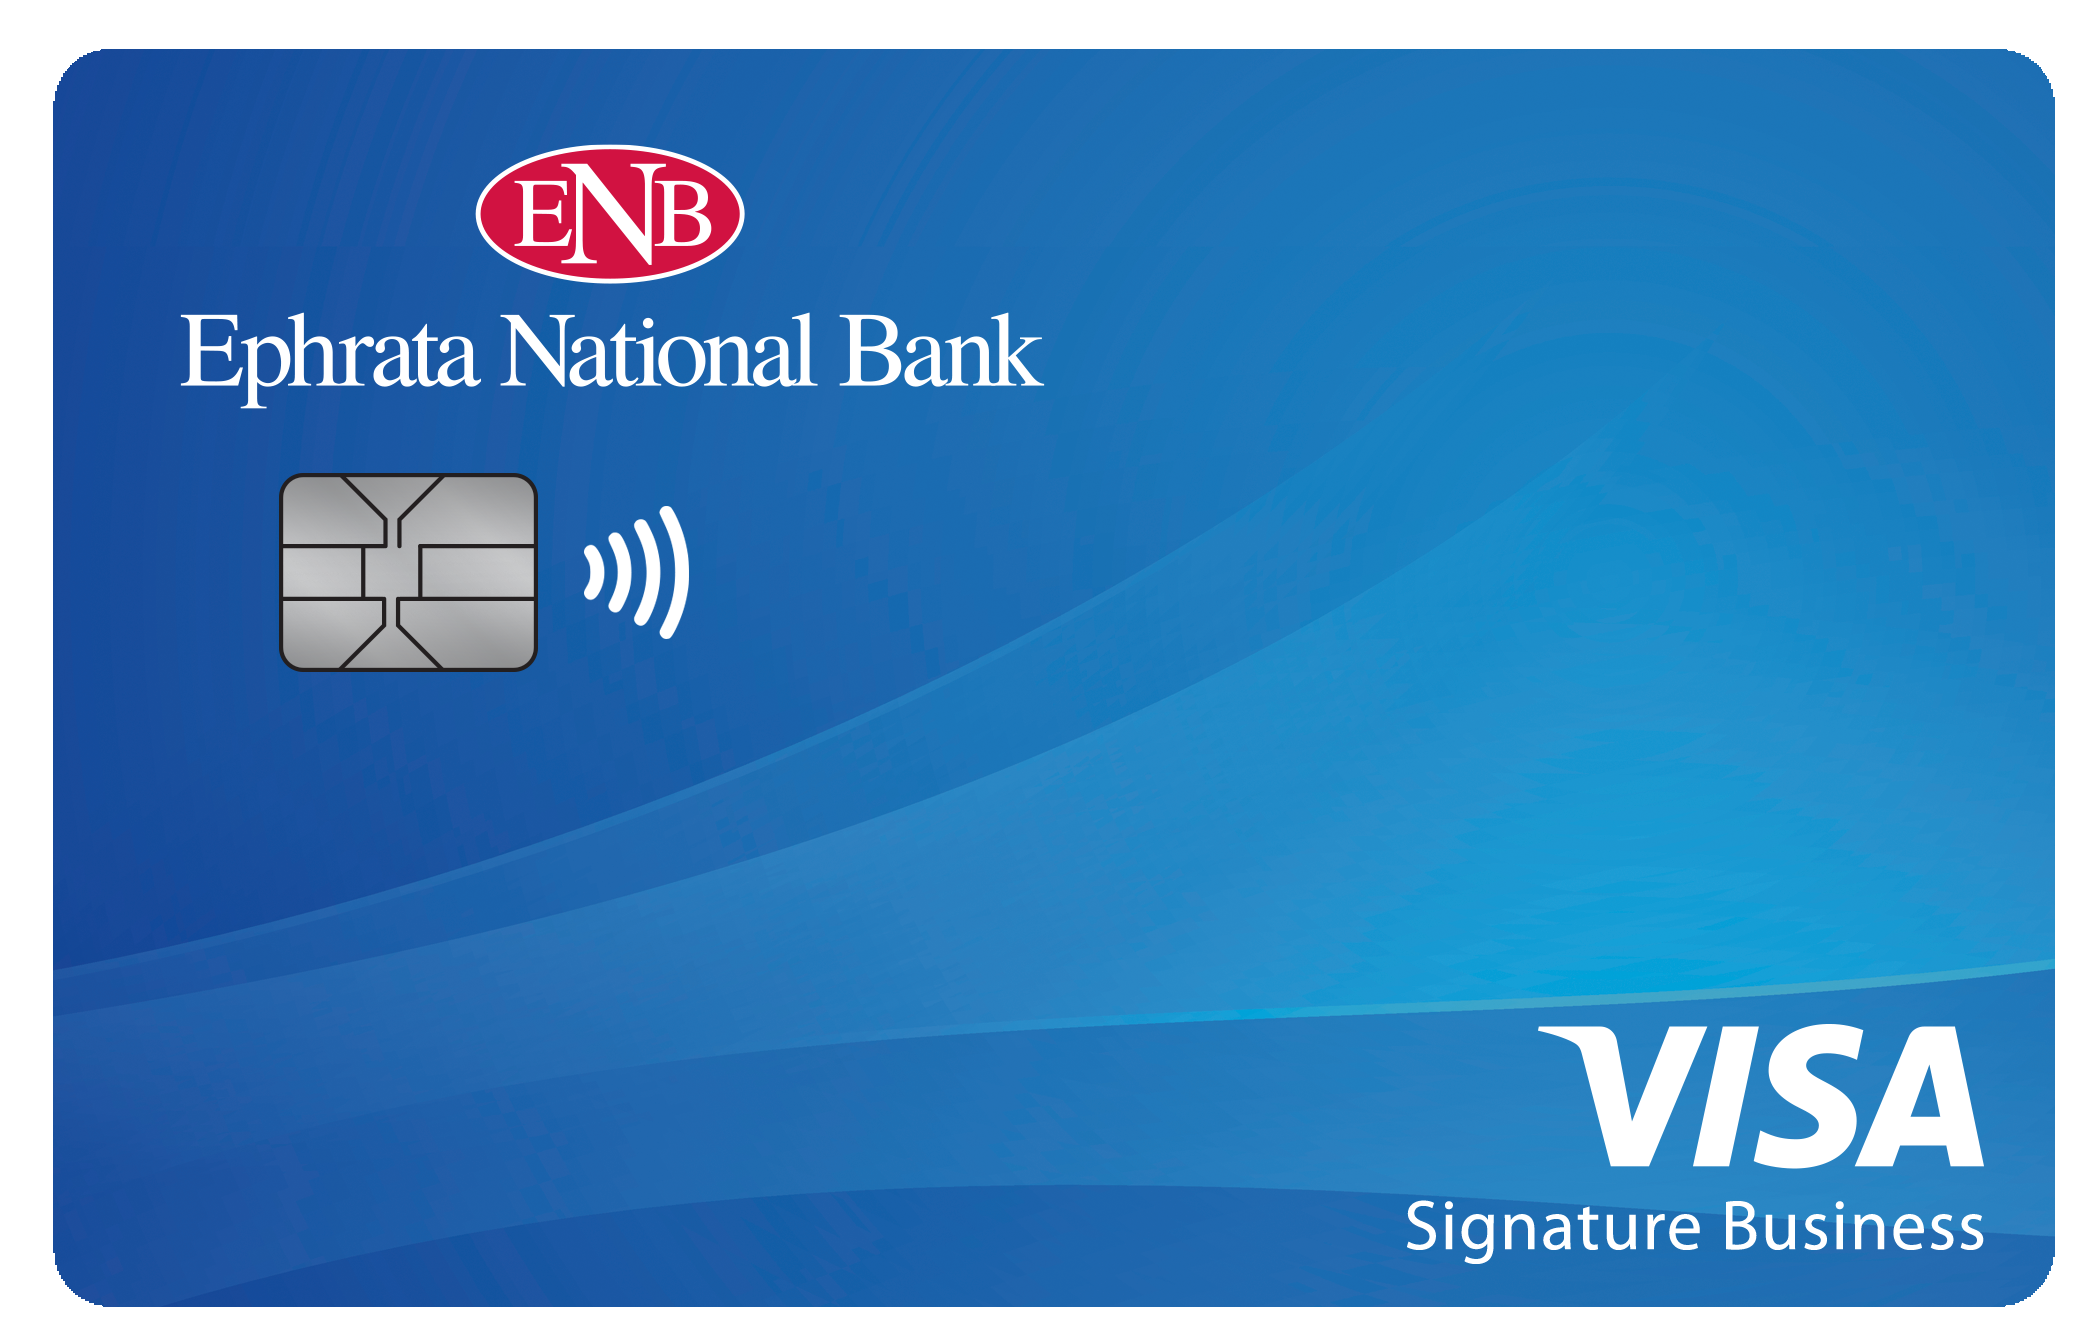 Ephrata National Bank Smart Business Rewards Card